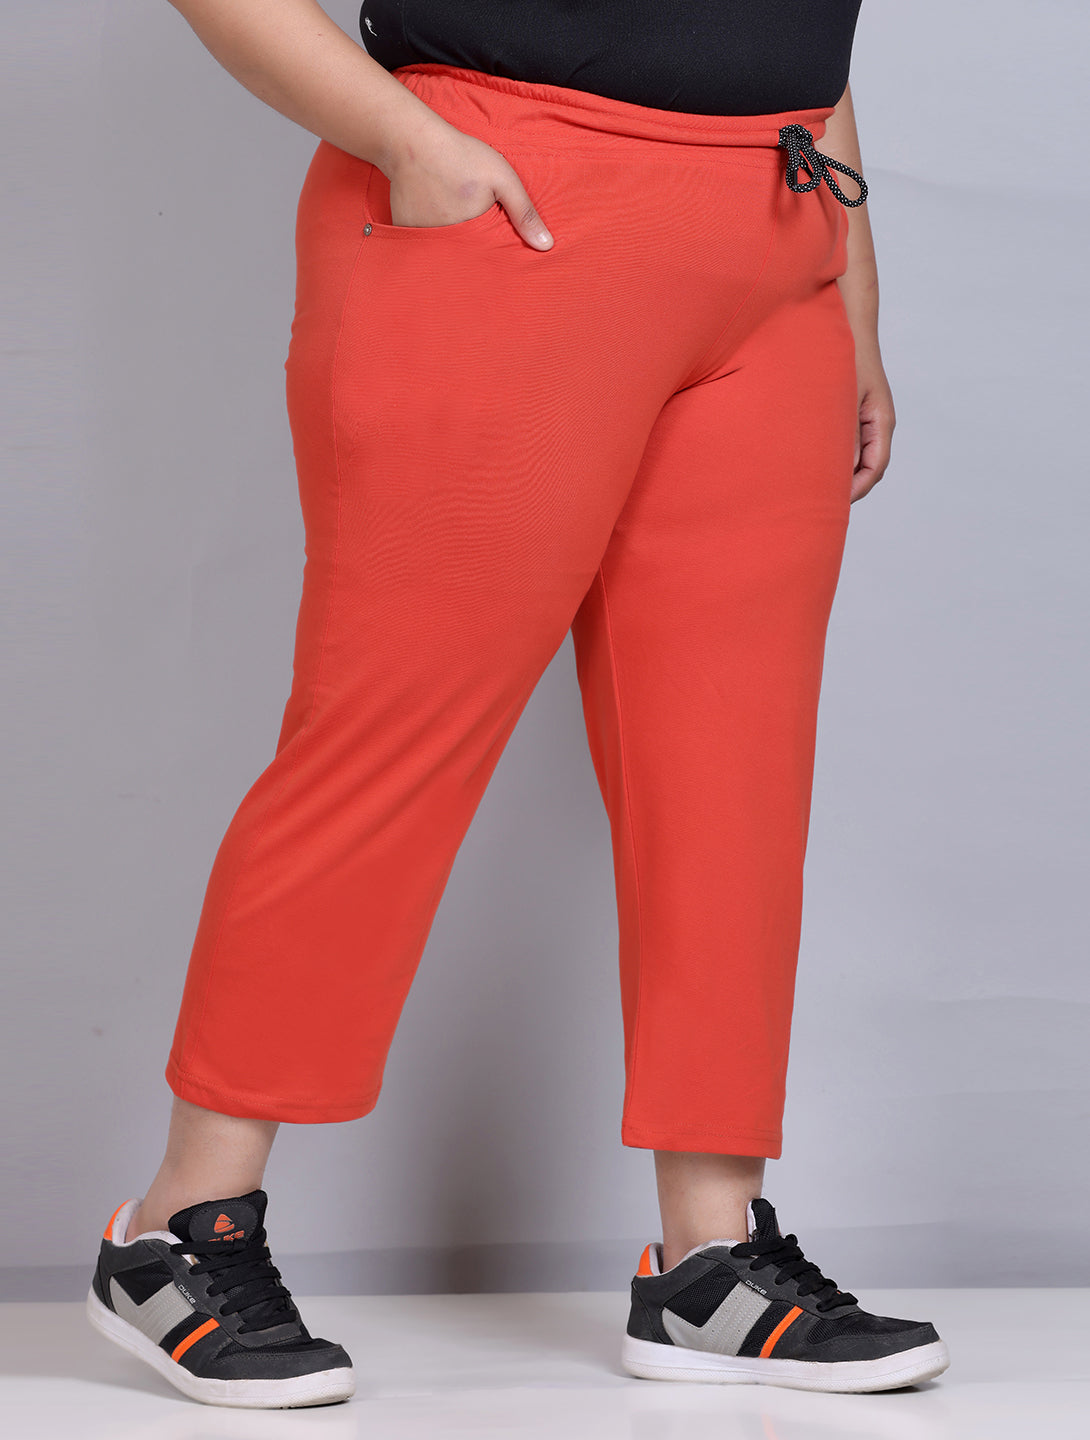 Capri Orange Pants for Girls for sale